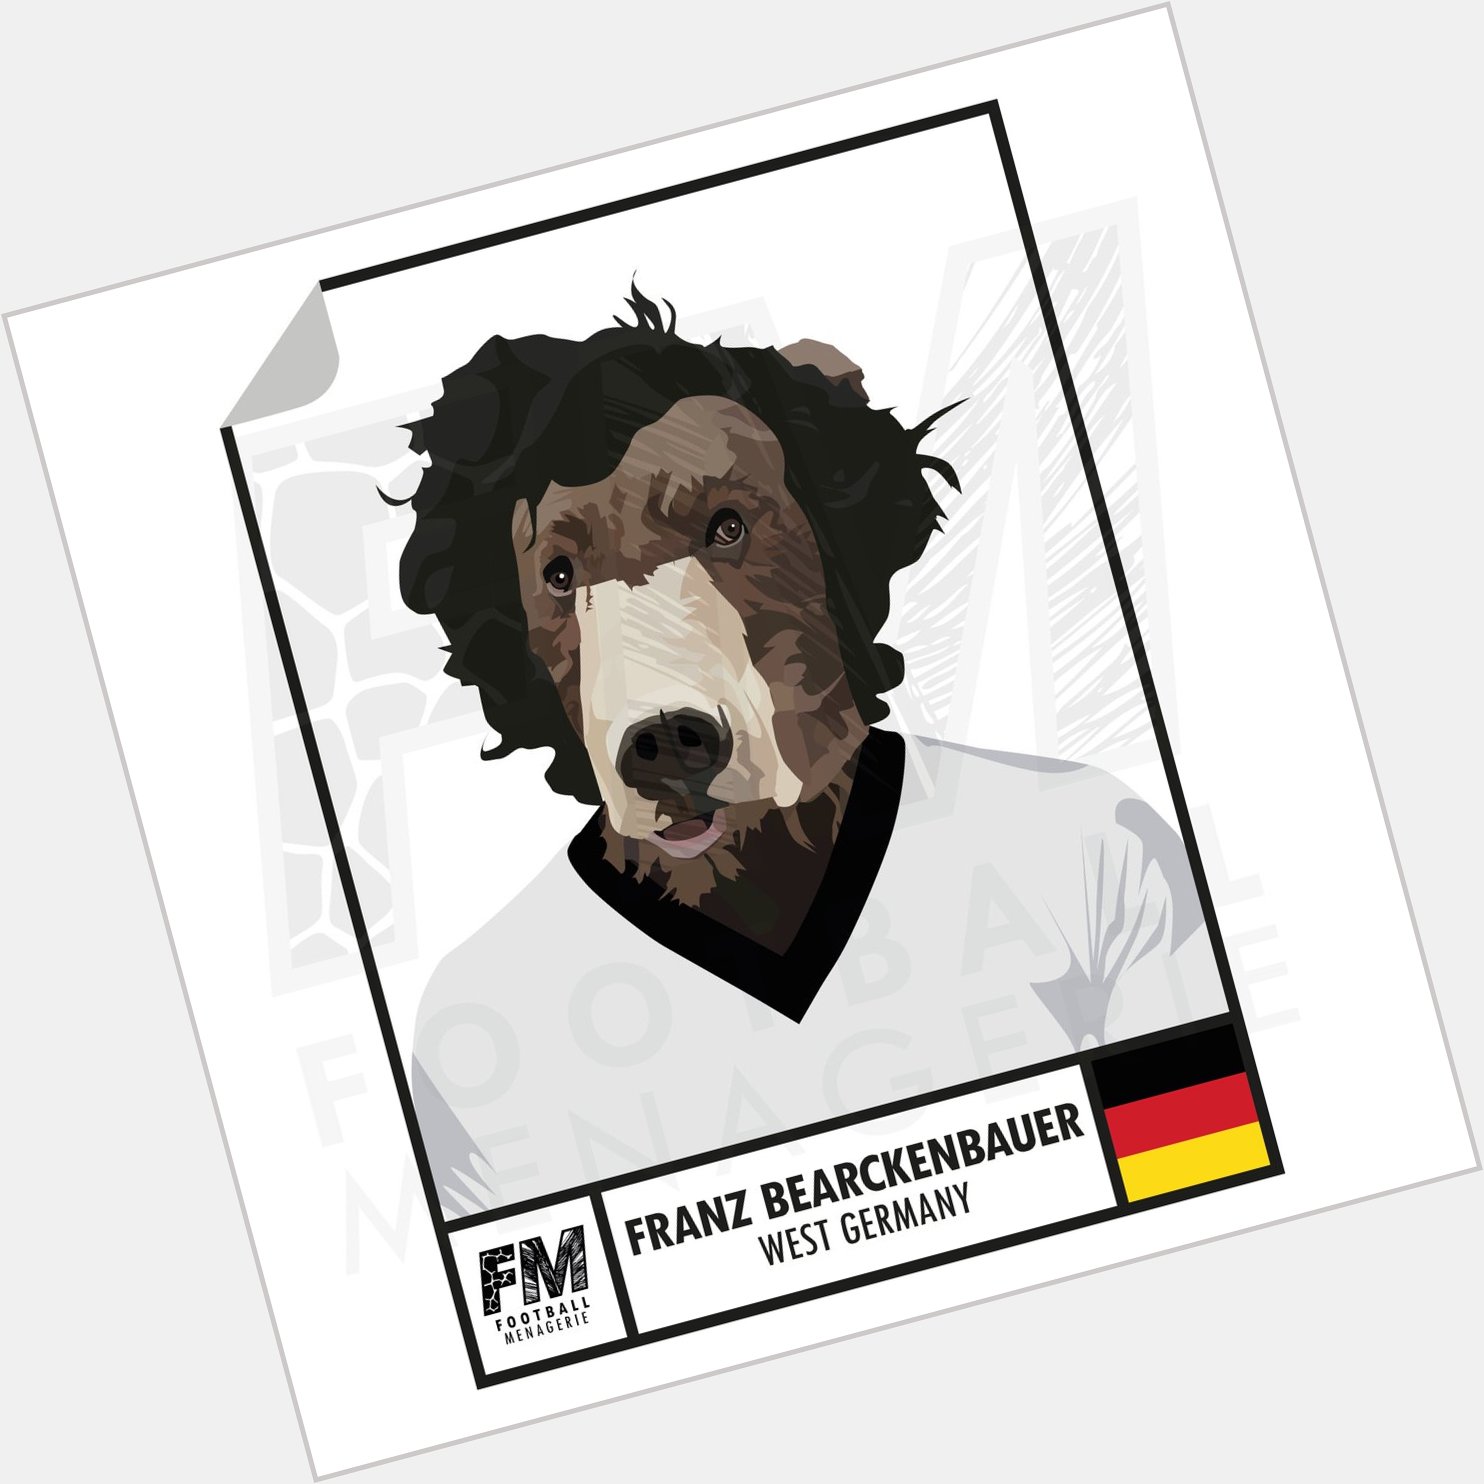 Happy birthday to Der Kaiser, Franz Beckenbauer.   